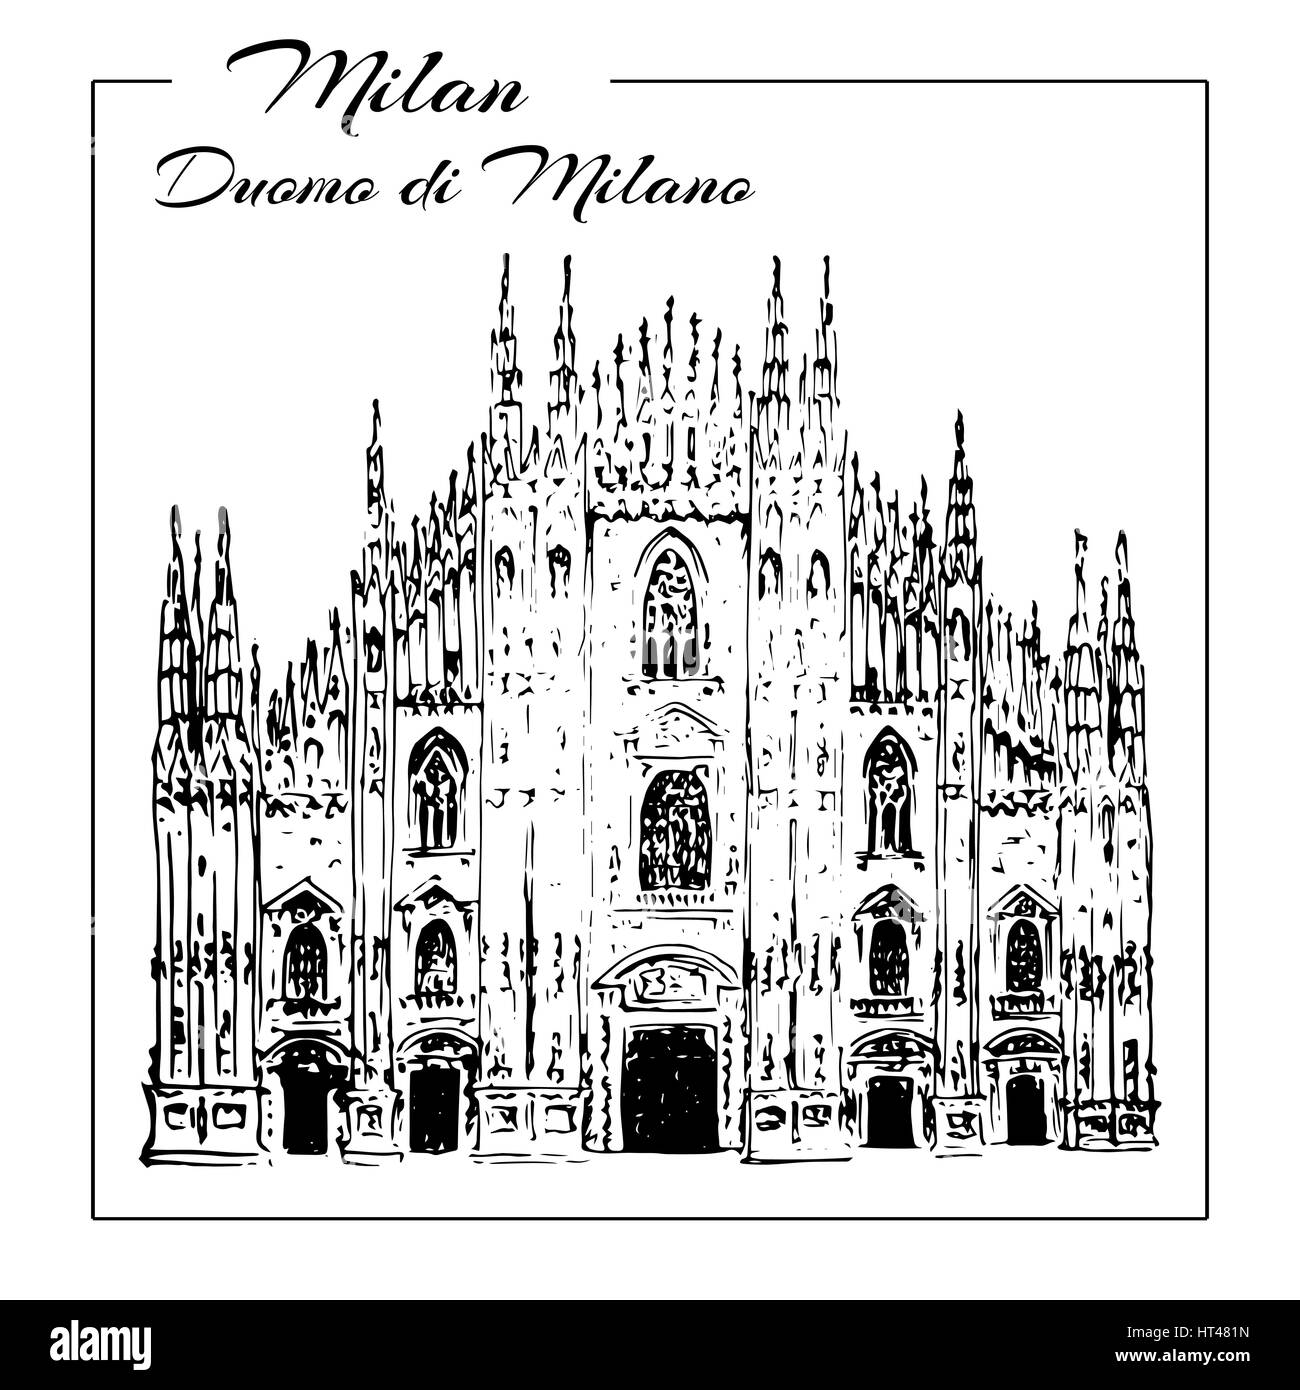 Duomo di Milano. Italien-Sightseeing. Kathedrale in Mailand. Handgezeichnete Skizze Abbildung. Einsetzbar bei Werbung, Reisen, Postkarten, Drucke, Stock Vektor